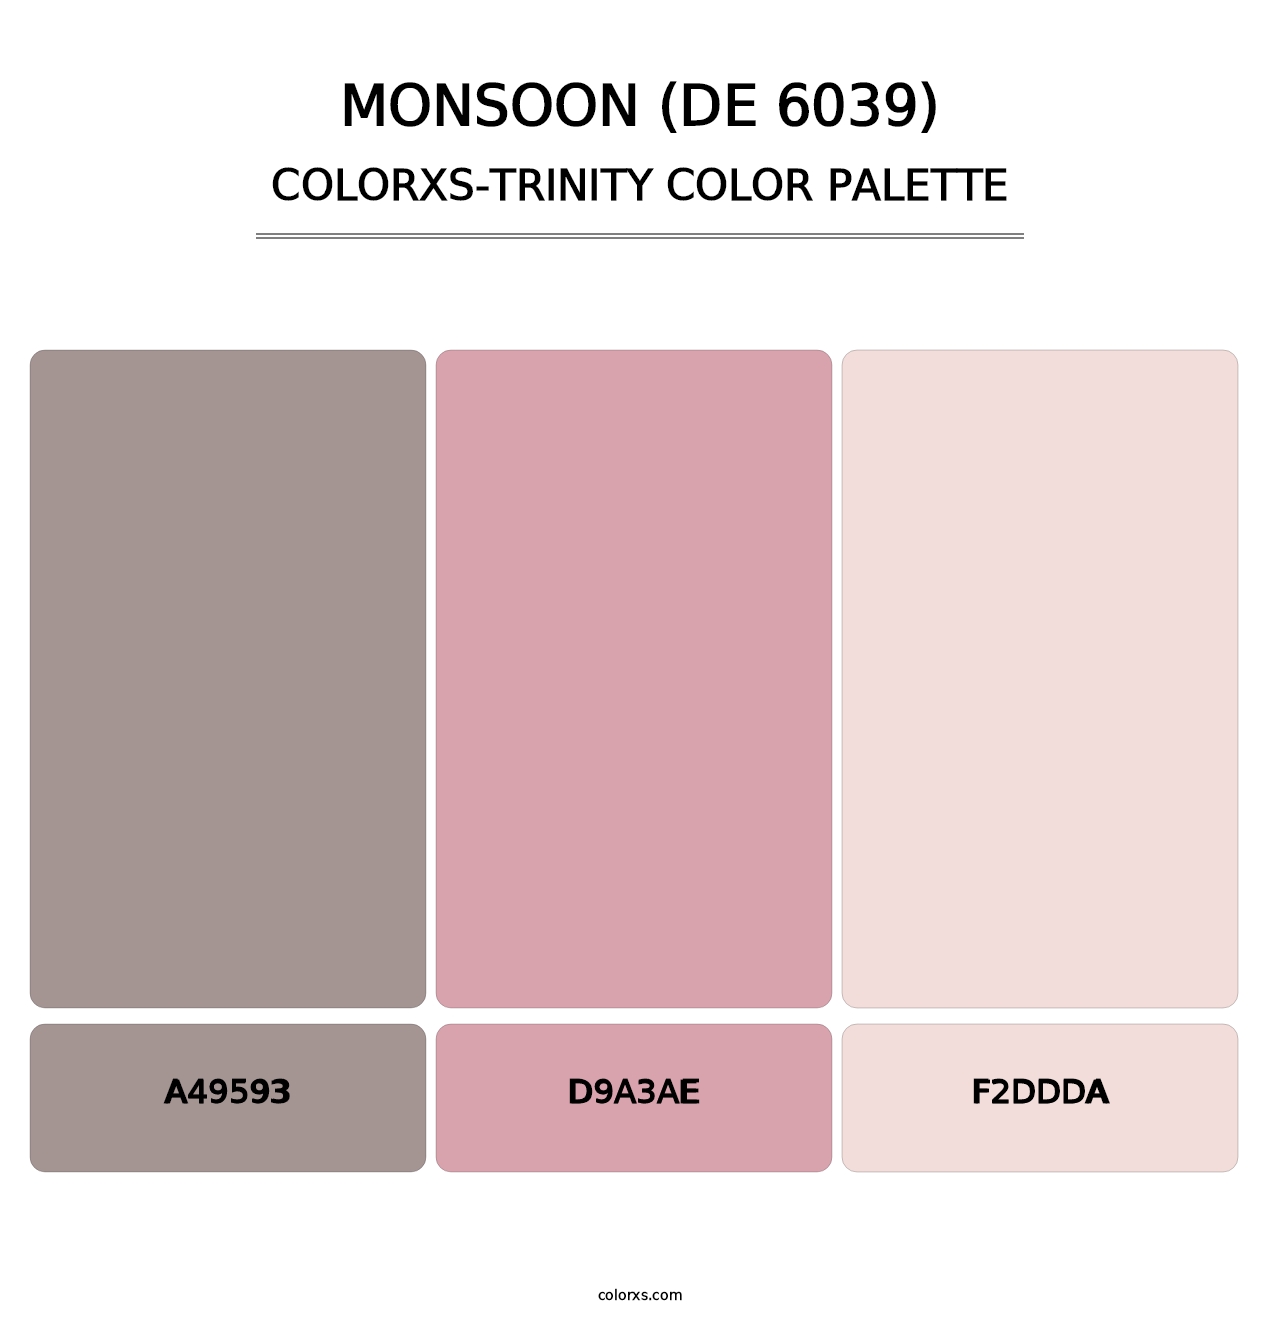 Monsoon (DE 6039) - Colorxs Trinity Palette